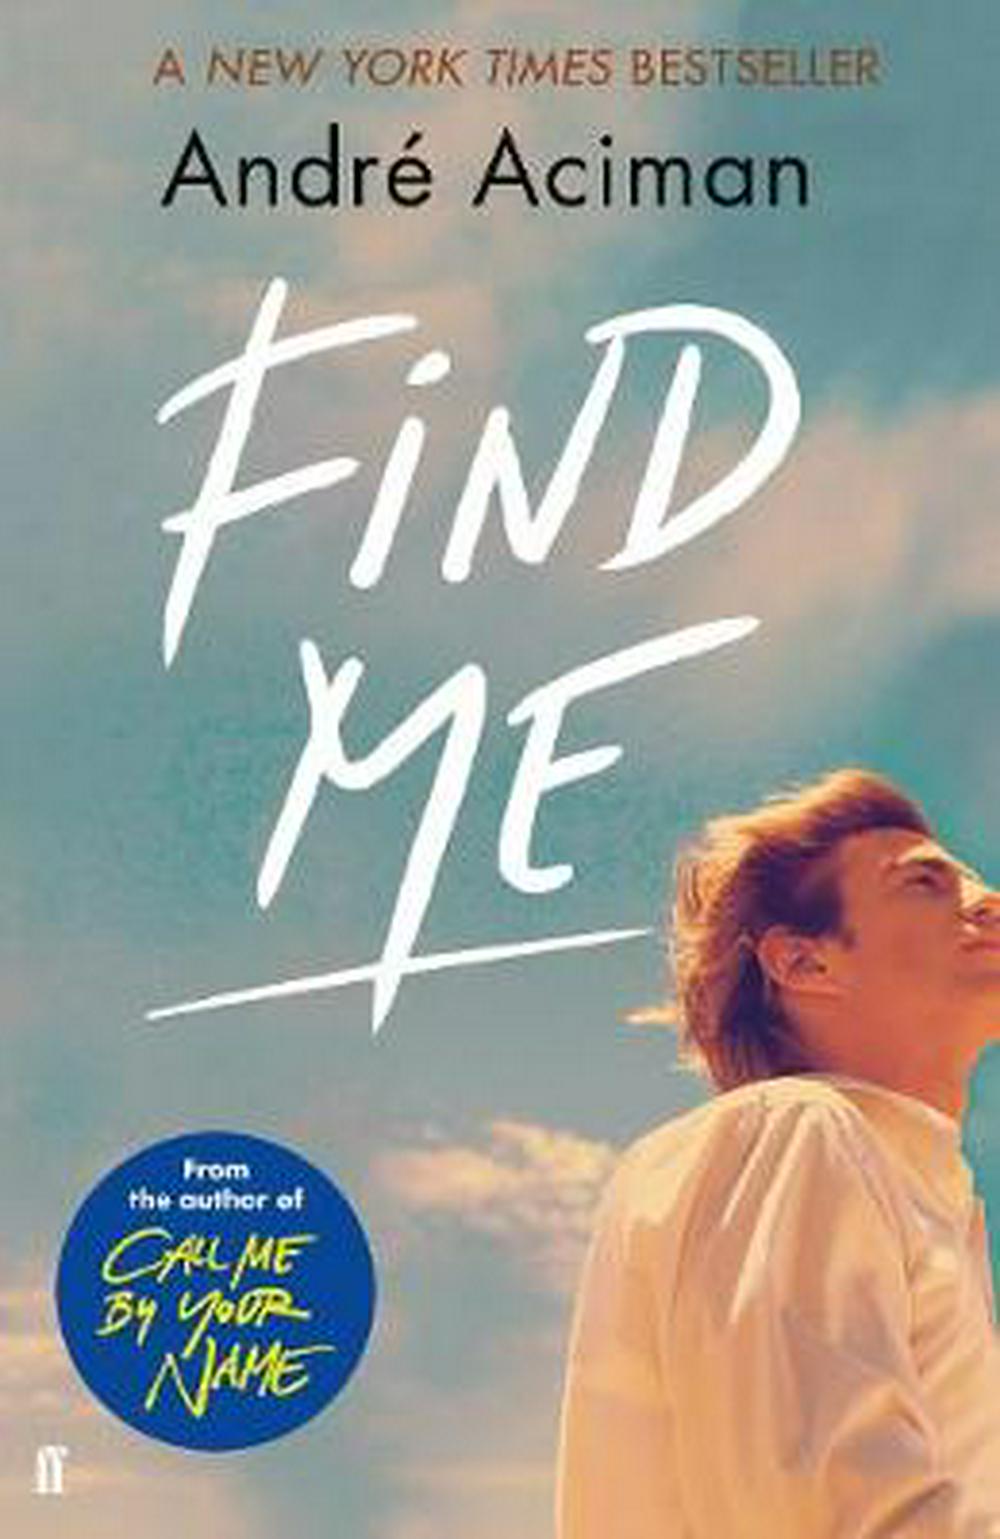 Find Me | Andre Aciman